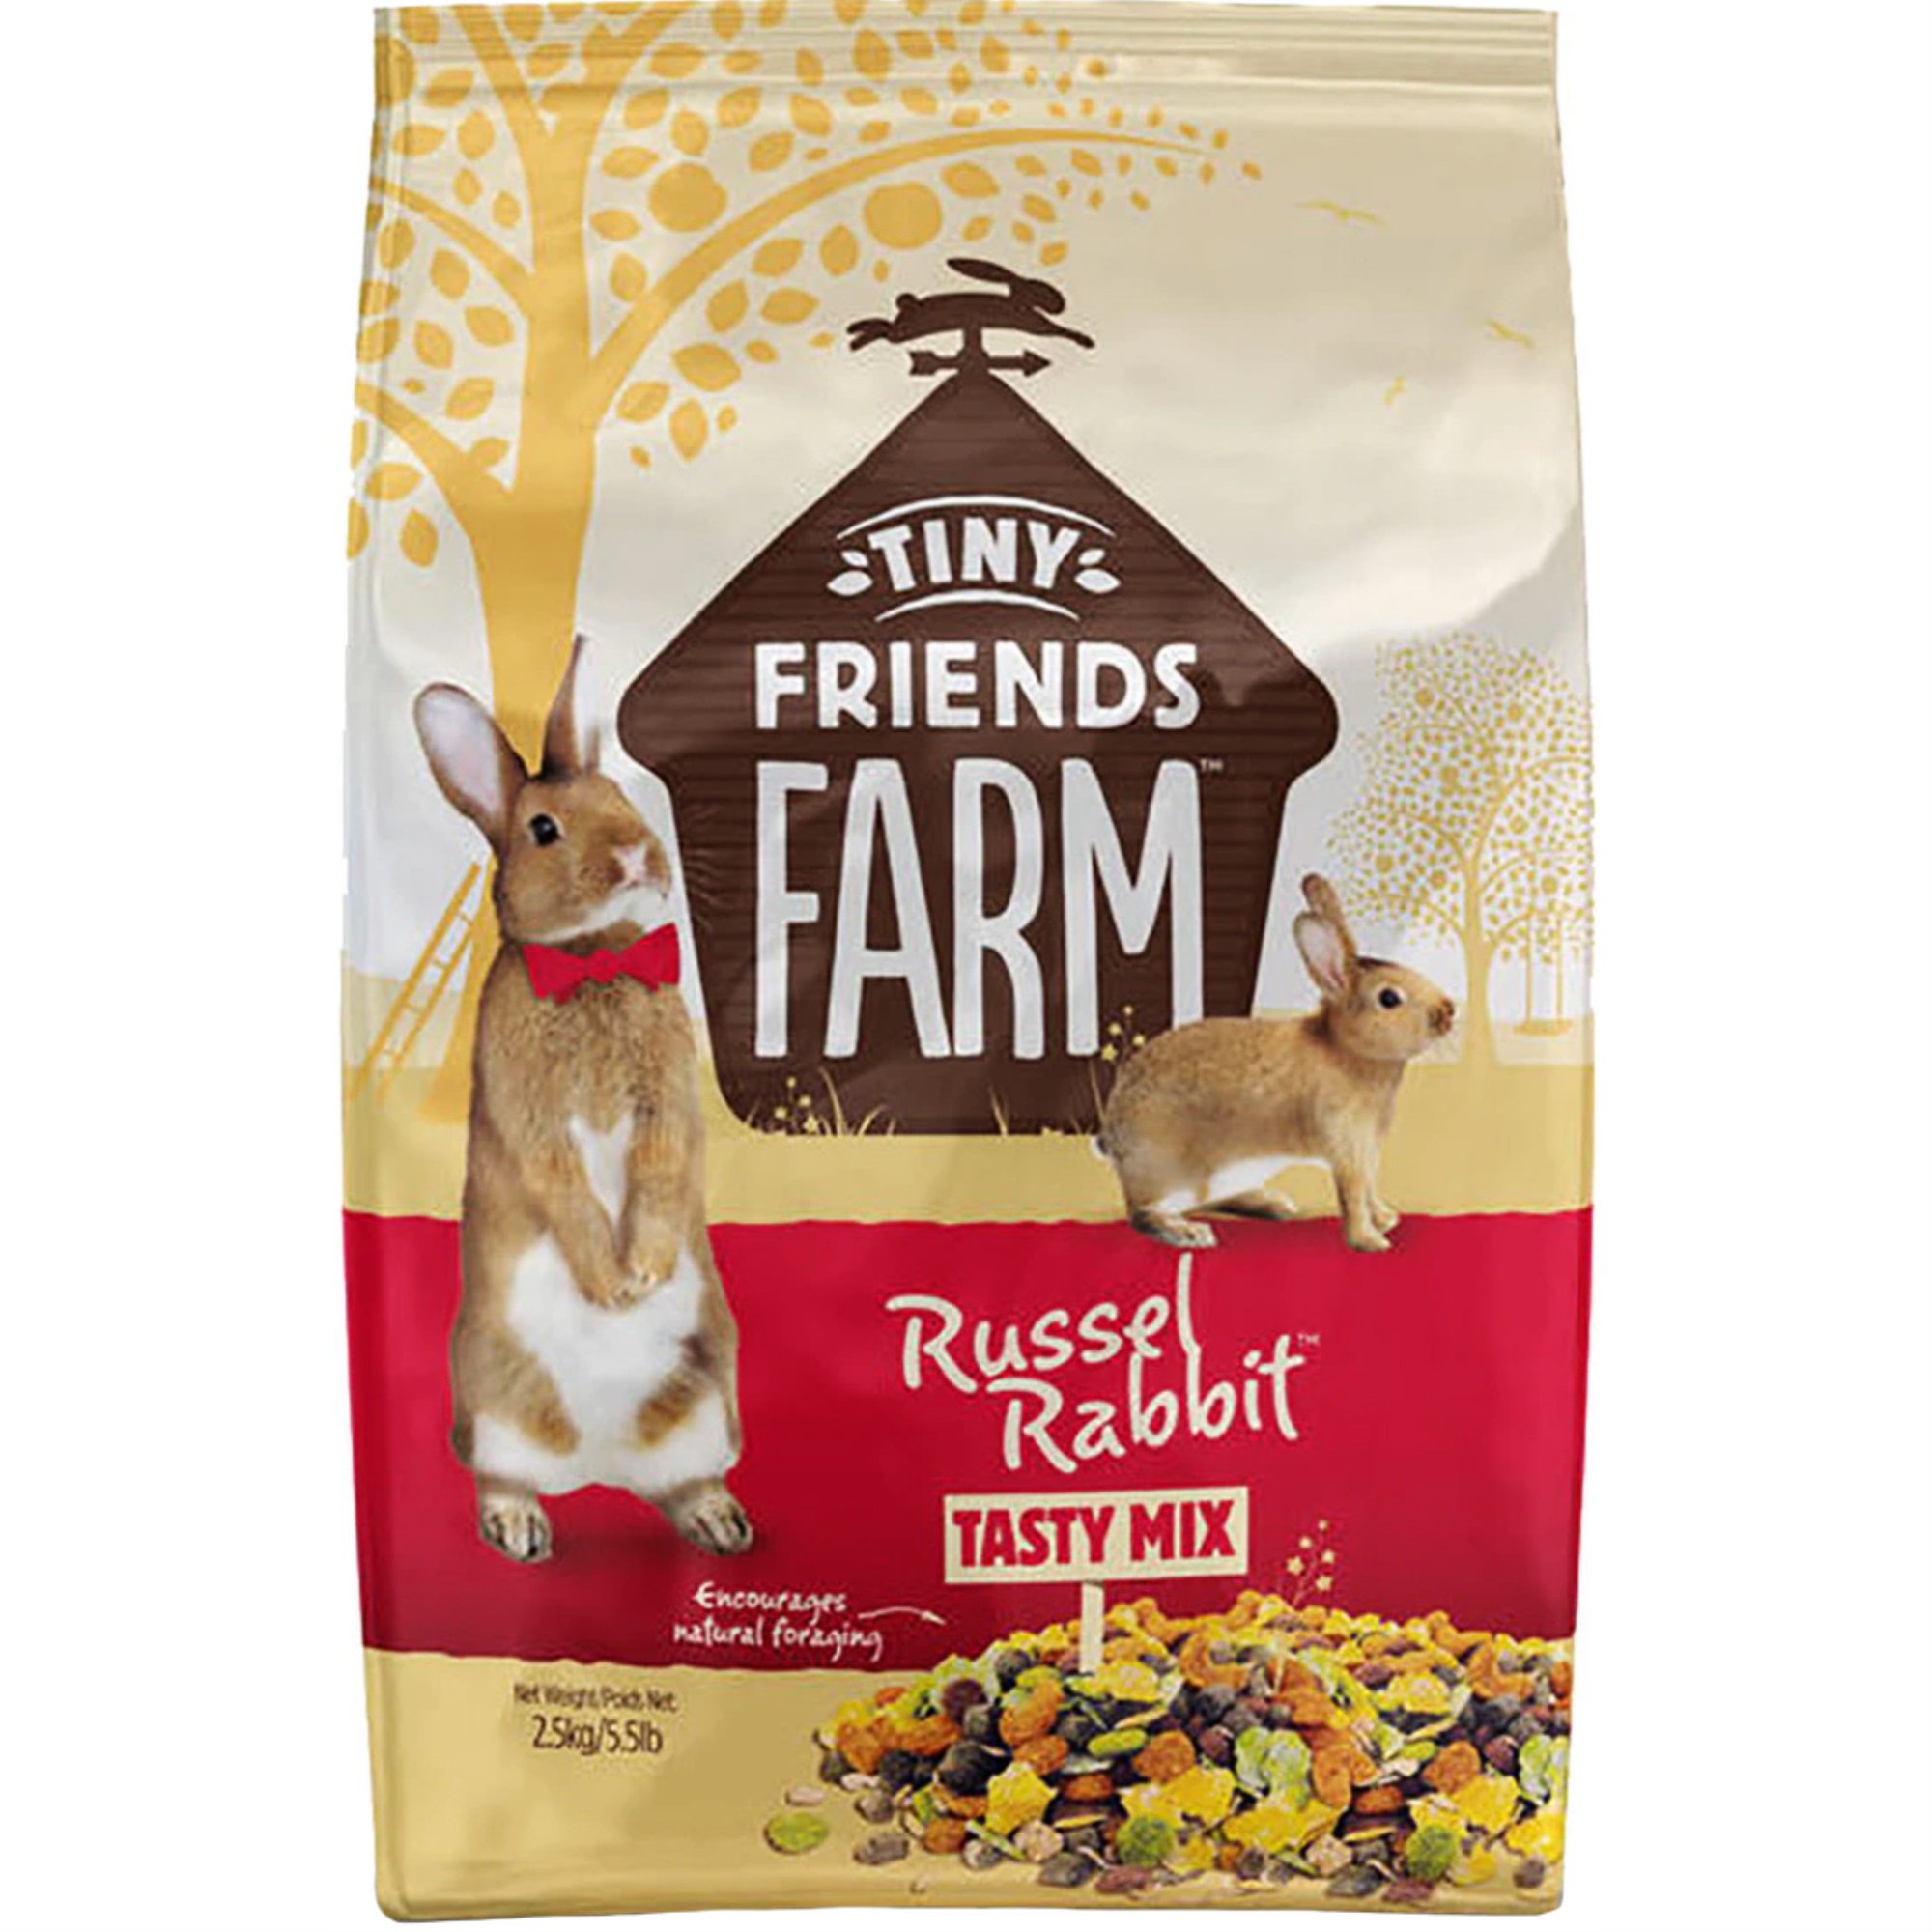 Supreme Pet Foods Tiny Friends Farm Russel Rabbit Tasty Mix